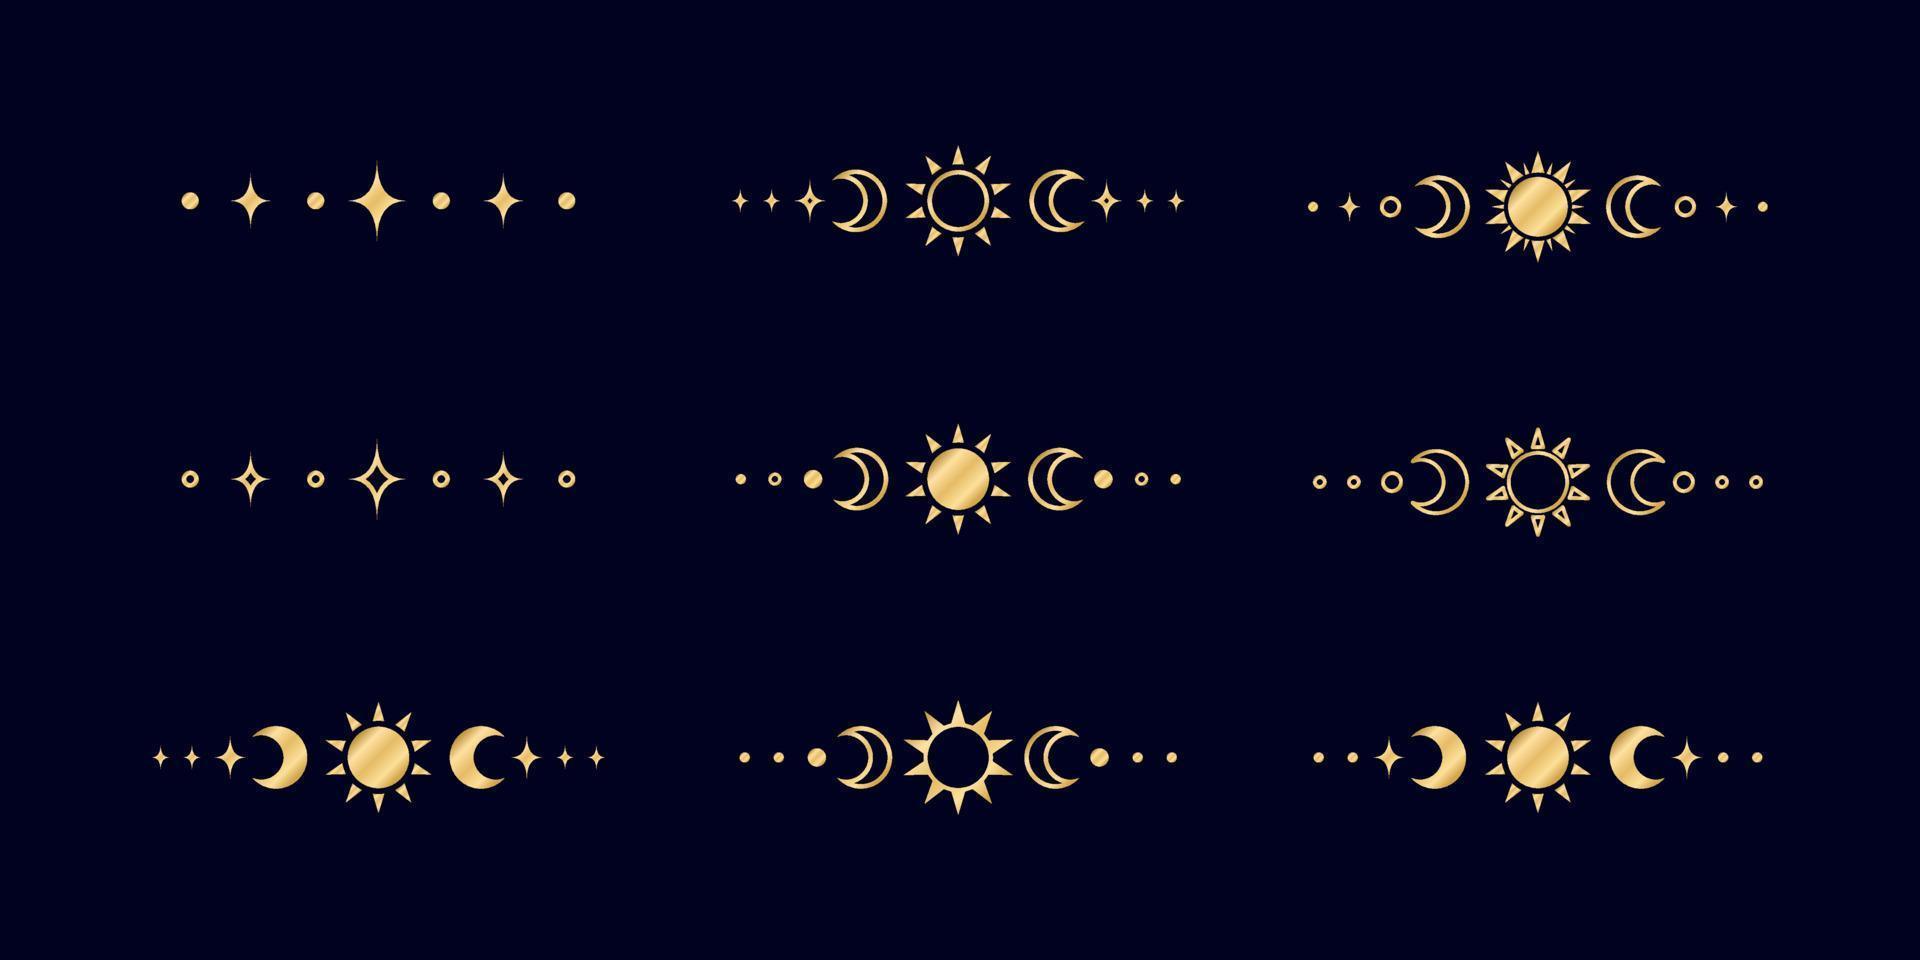 goud hemel- tekst verdeler met zon, sterren, maan fasen, halve manen. overladen boho mysticus scheidingsteken decoratief element vector